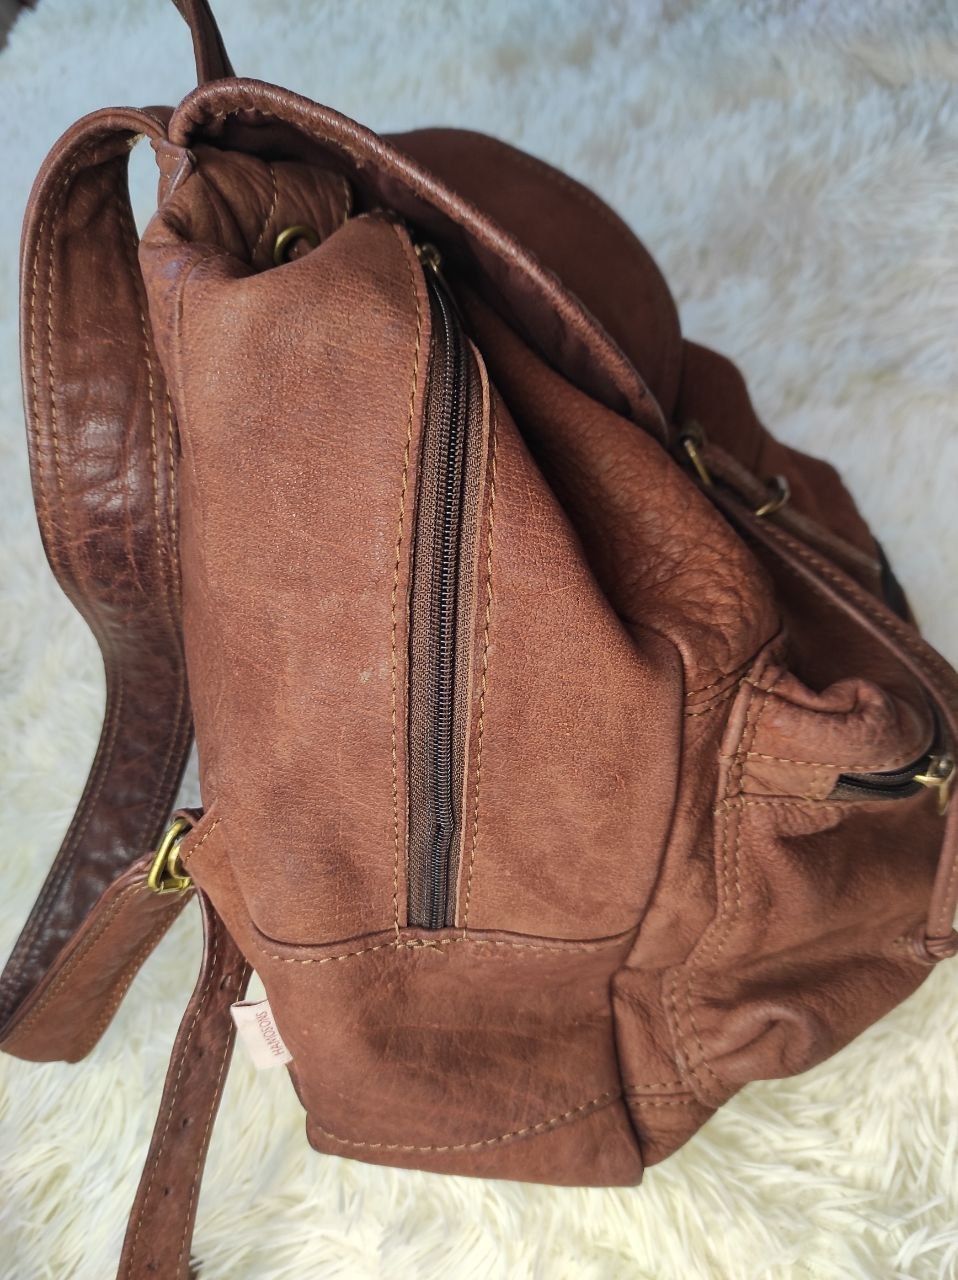 Шкіряний рюкзак дорогого бренду шкіра сумка наплічник ранець кожаный